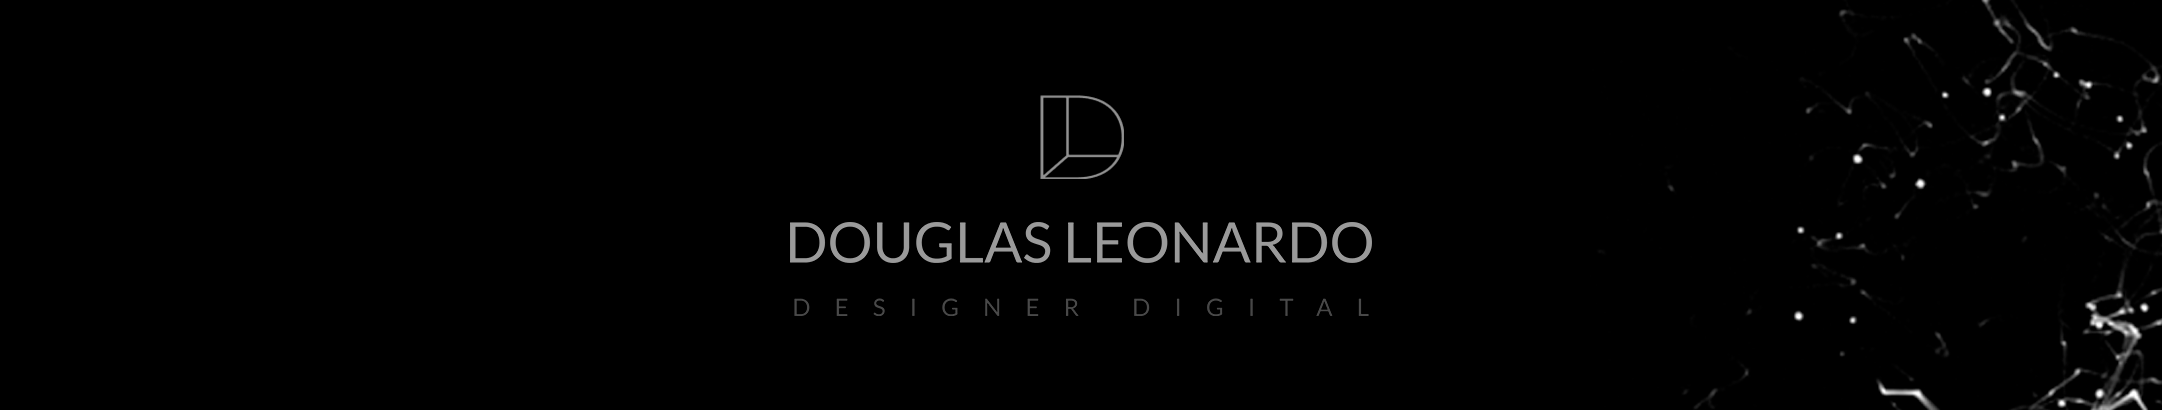 Douglas Leonardo のプロファイルバナー